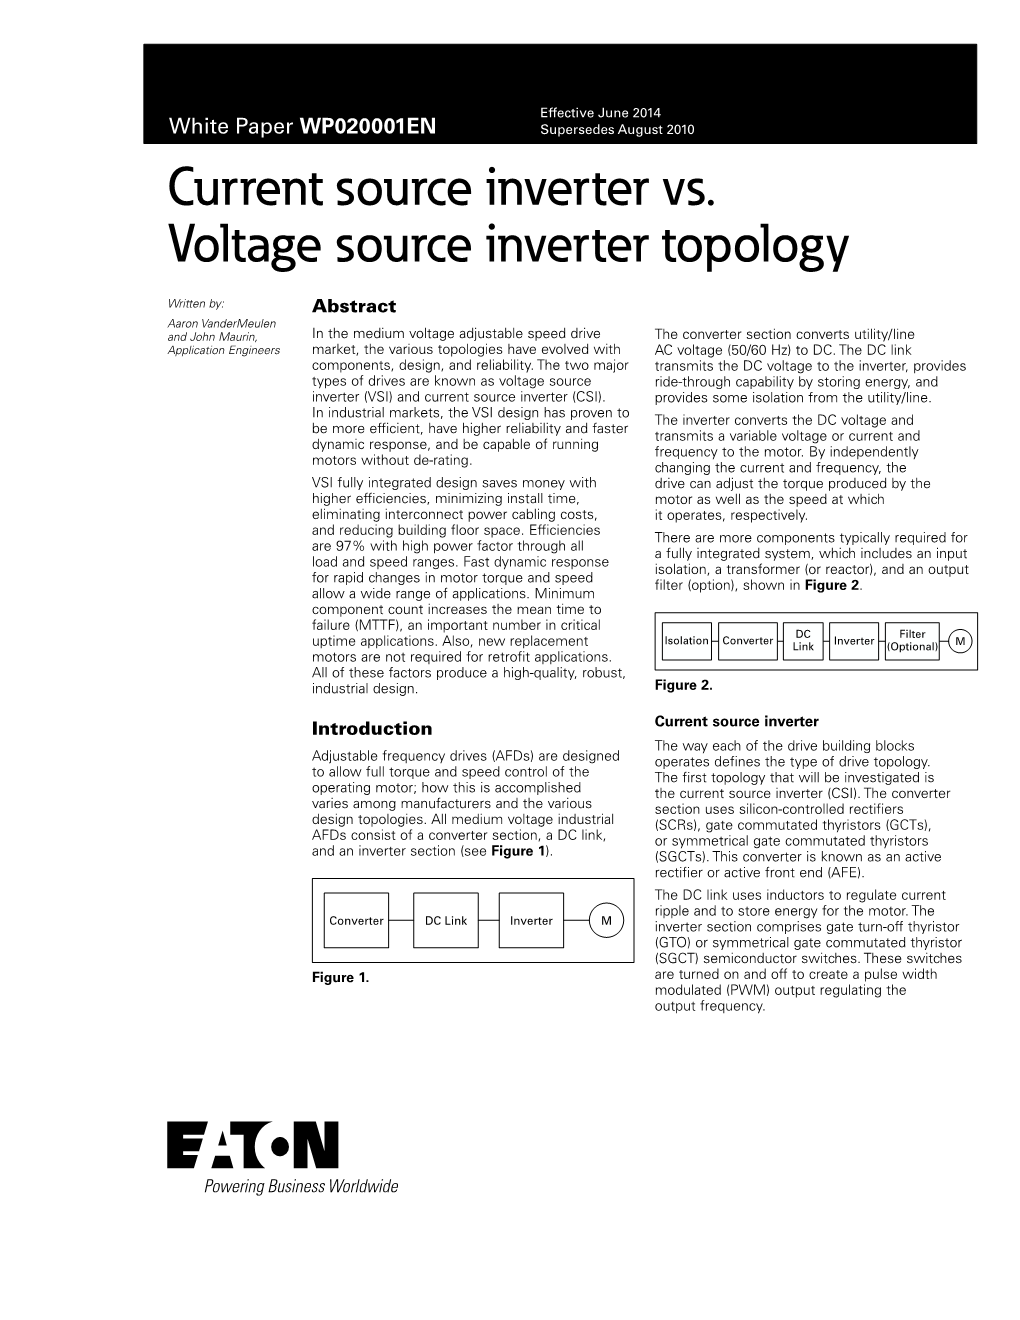 Current Source Inverter Vs. Voltage Source Inverter Topology